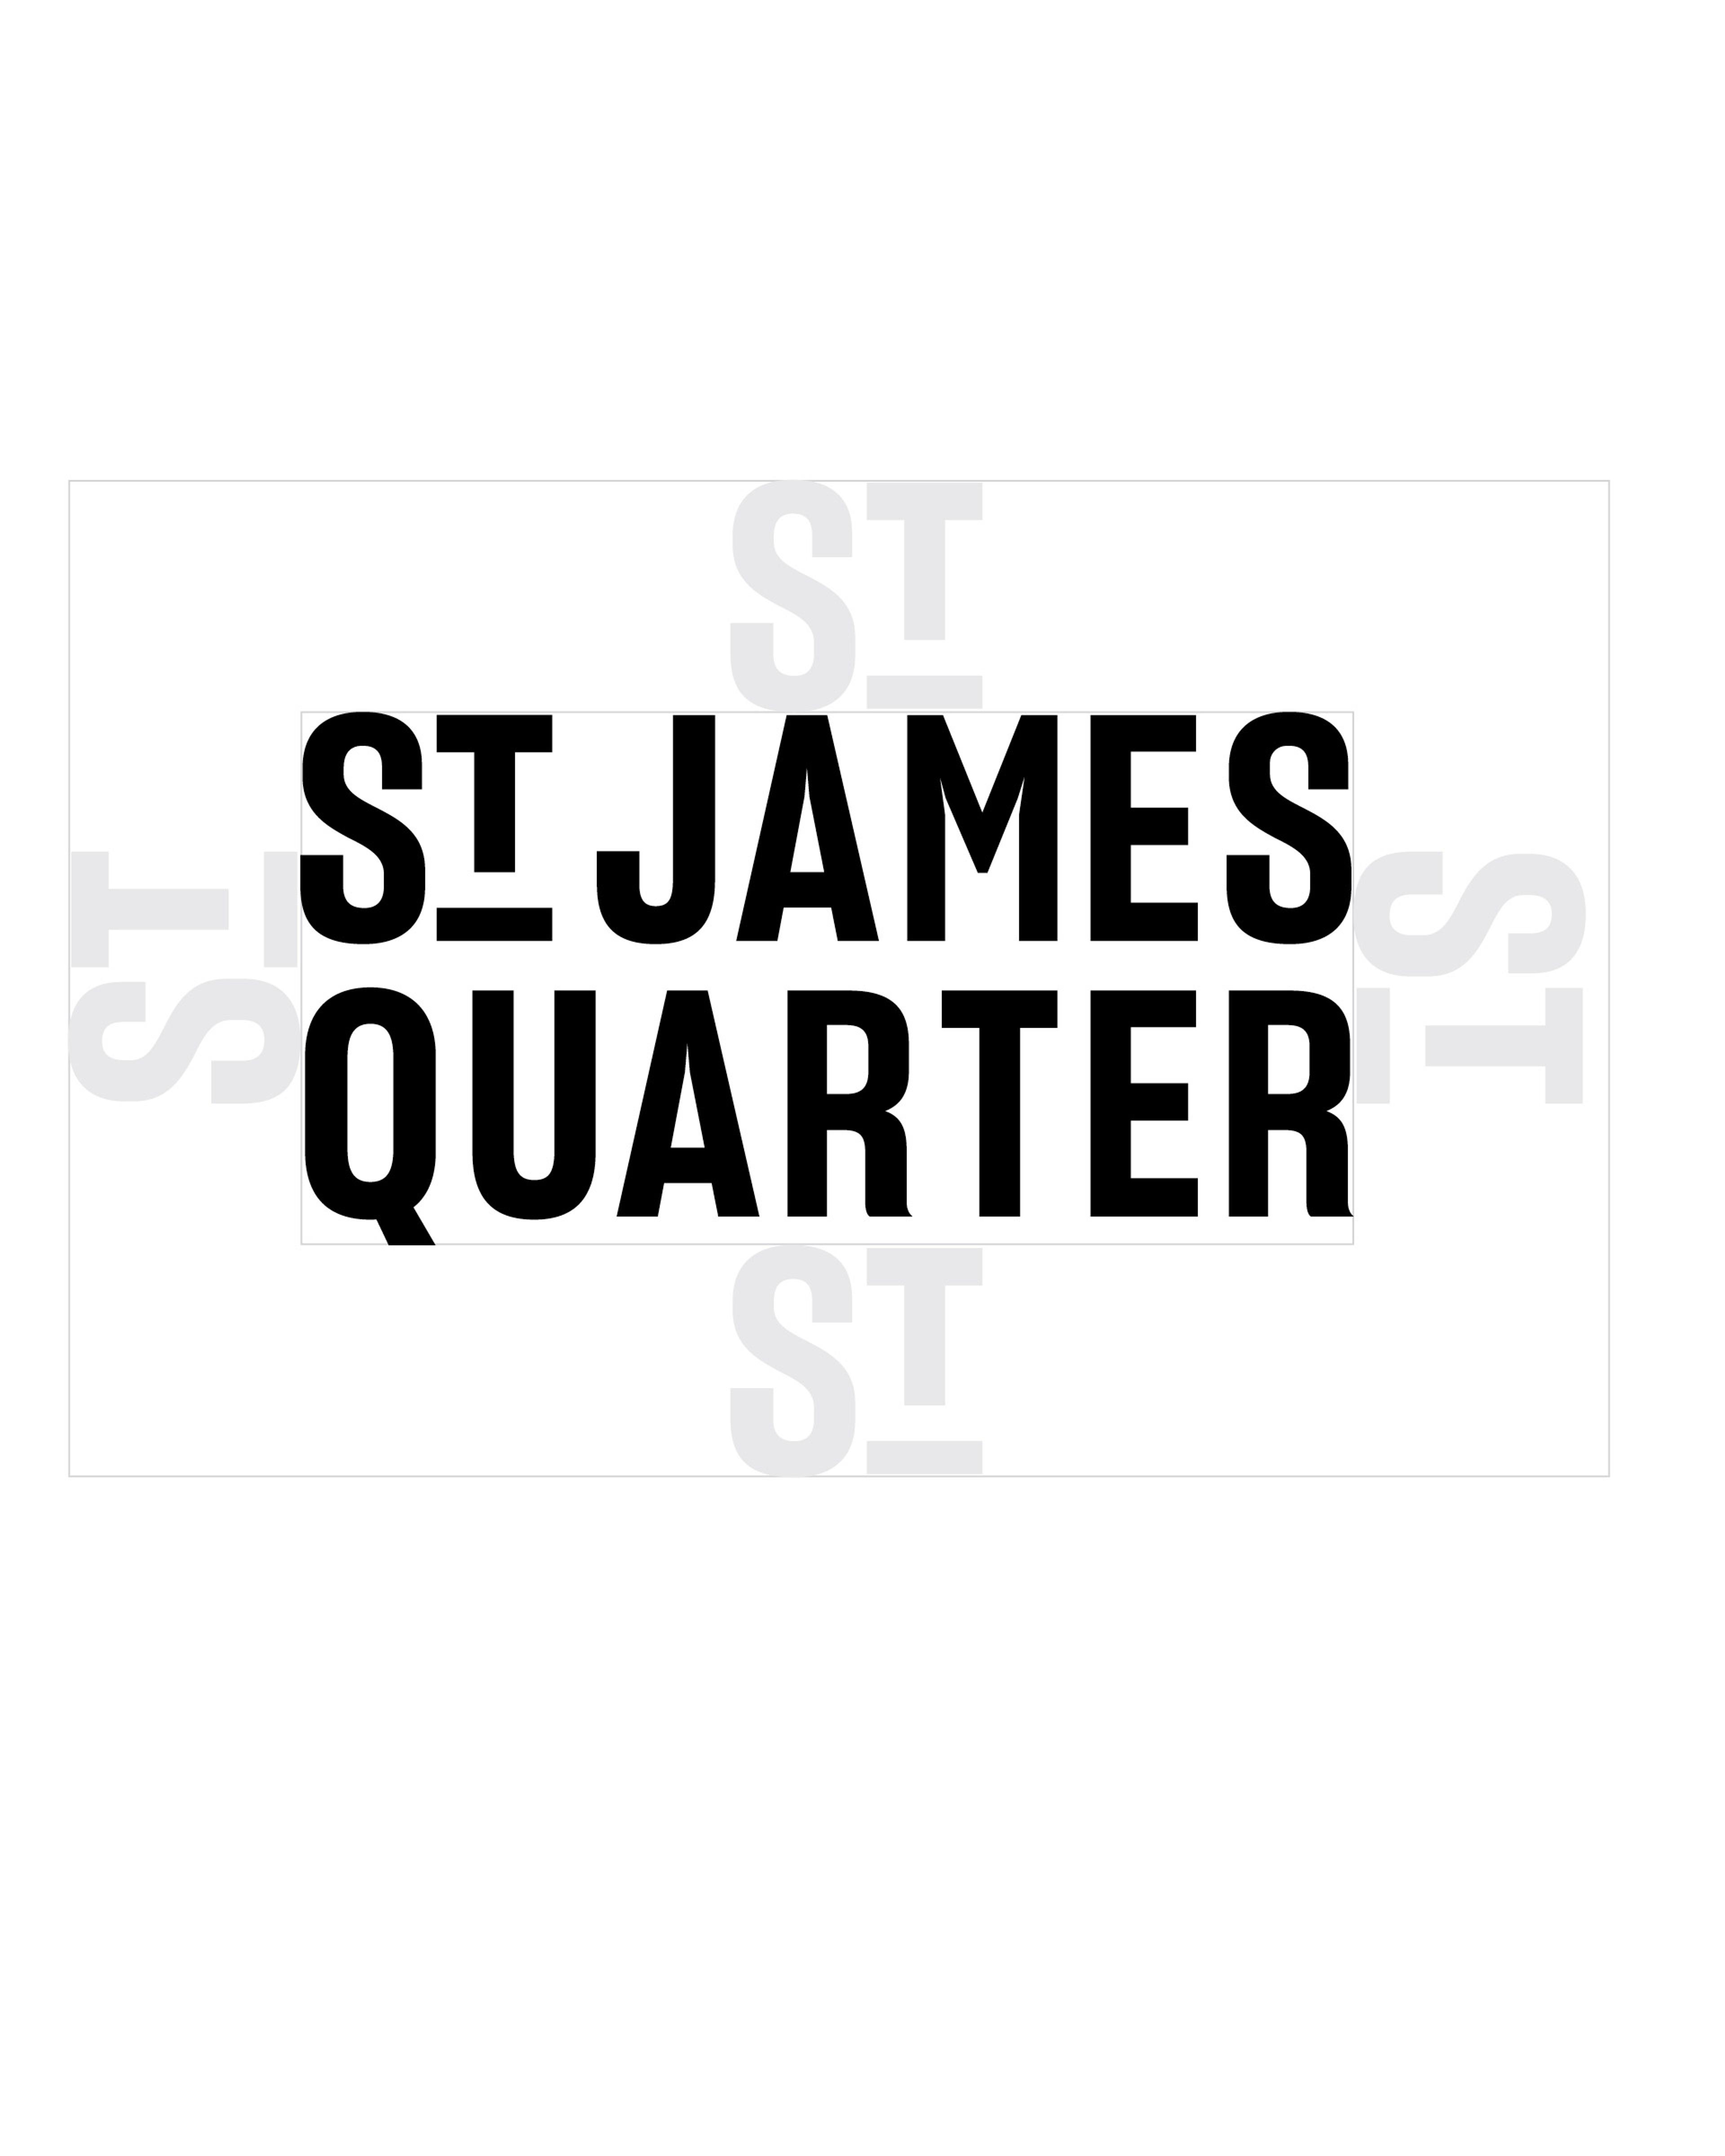 St James Quarter - Logo creation